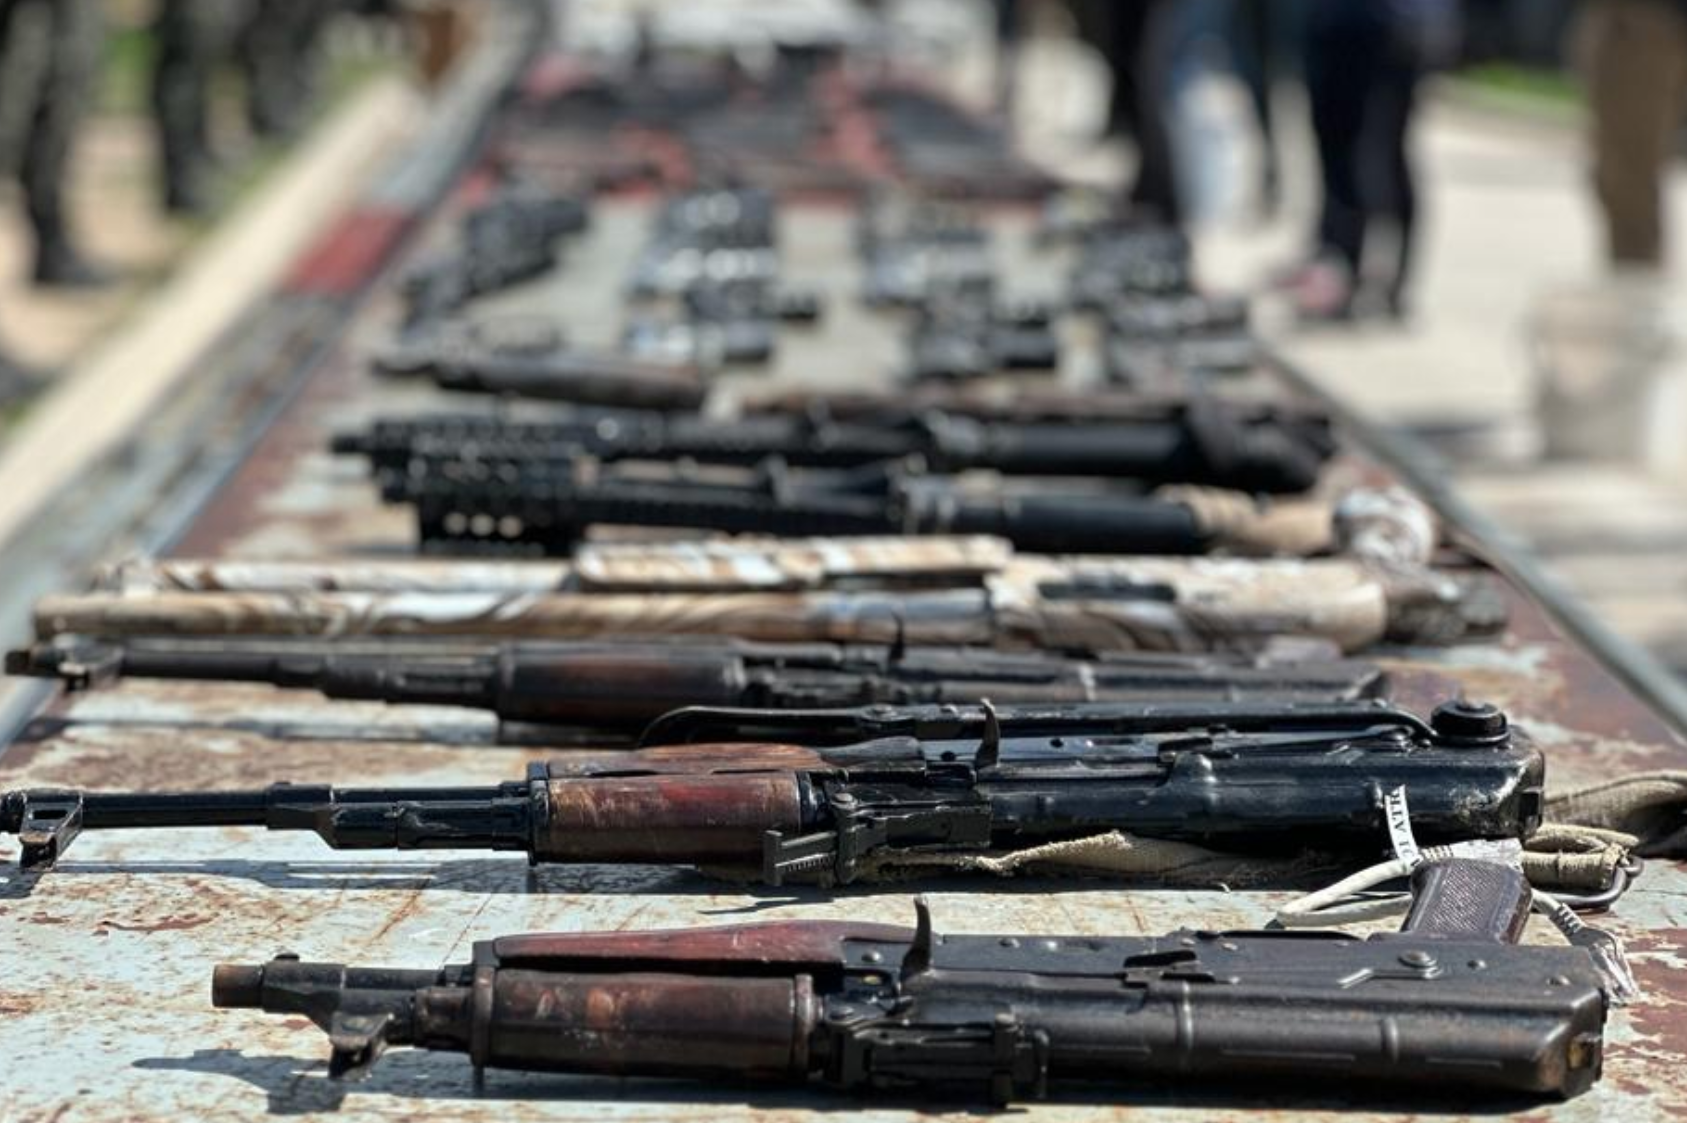 Arsenal de unas 137 armas de fuego incautan en requisas dentro de cárceles del país